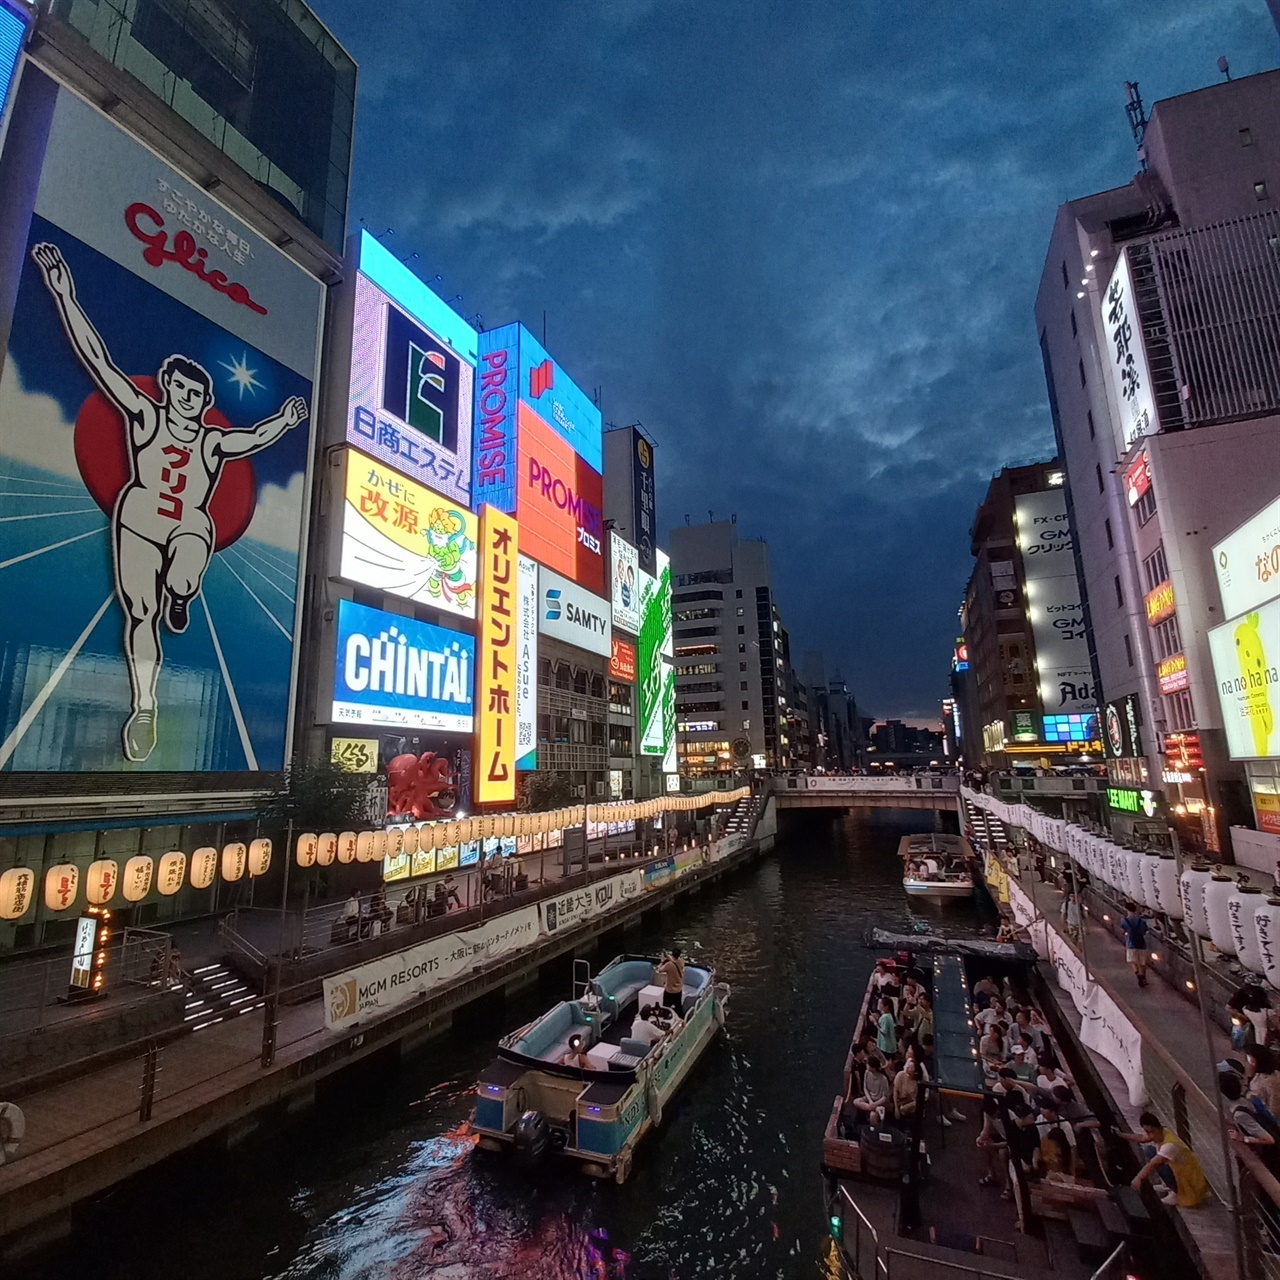 오사카 도톤보리의 초저녁 풍경. 간판 속에서 ‘글리코’가 웃고 있다.
